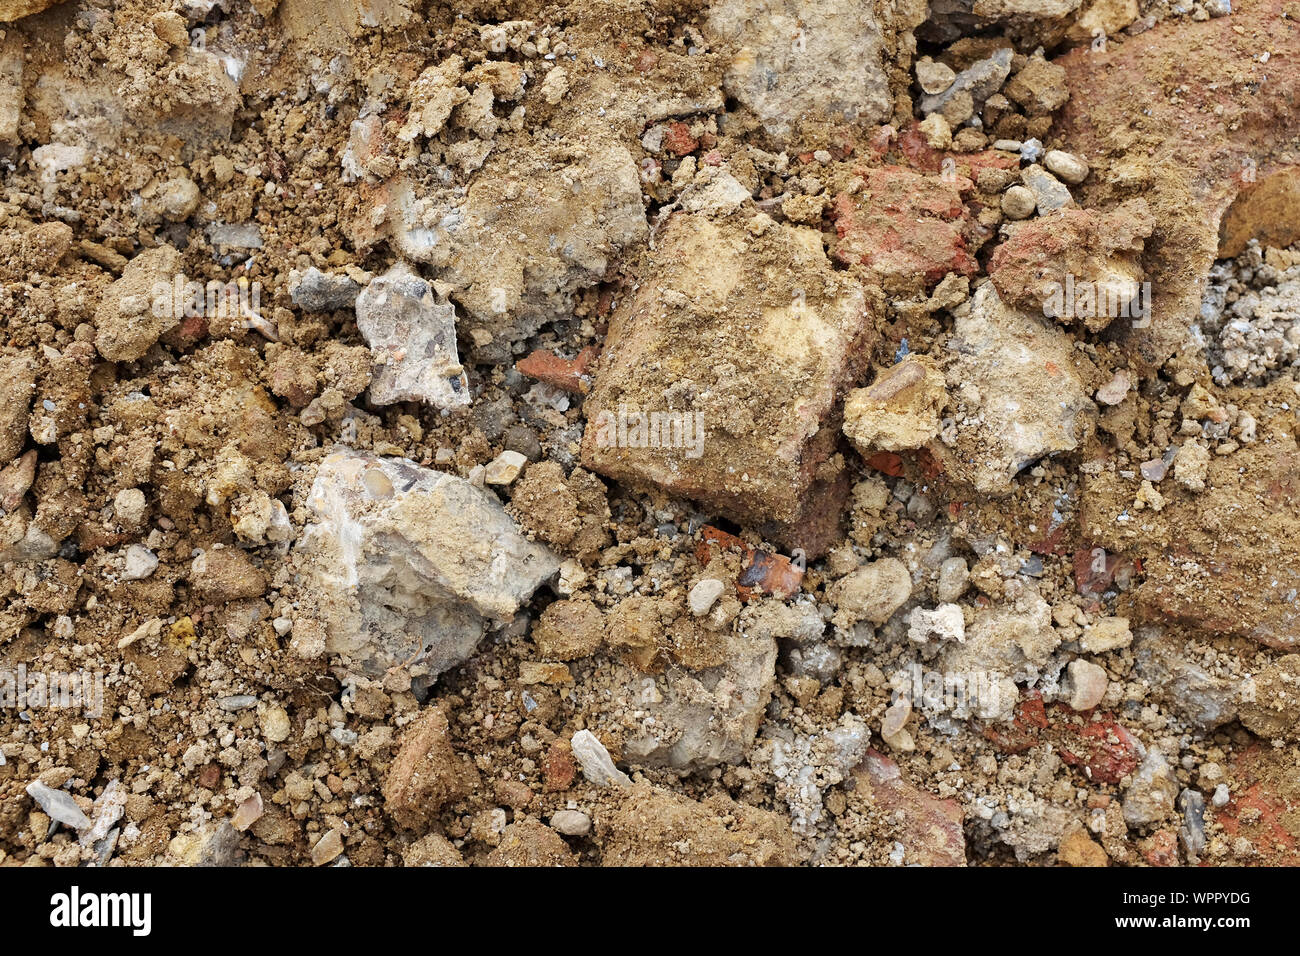 Les pièces de béton et de brique, mélangé avec le sol et les pierres d'une excavation - texture de fond abstrait Banque D'Images